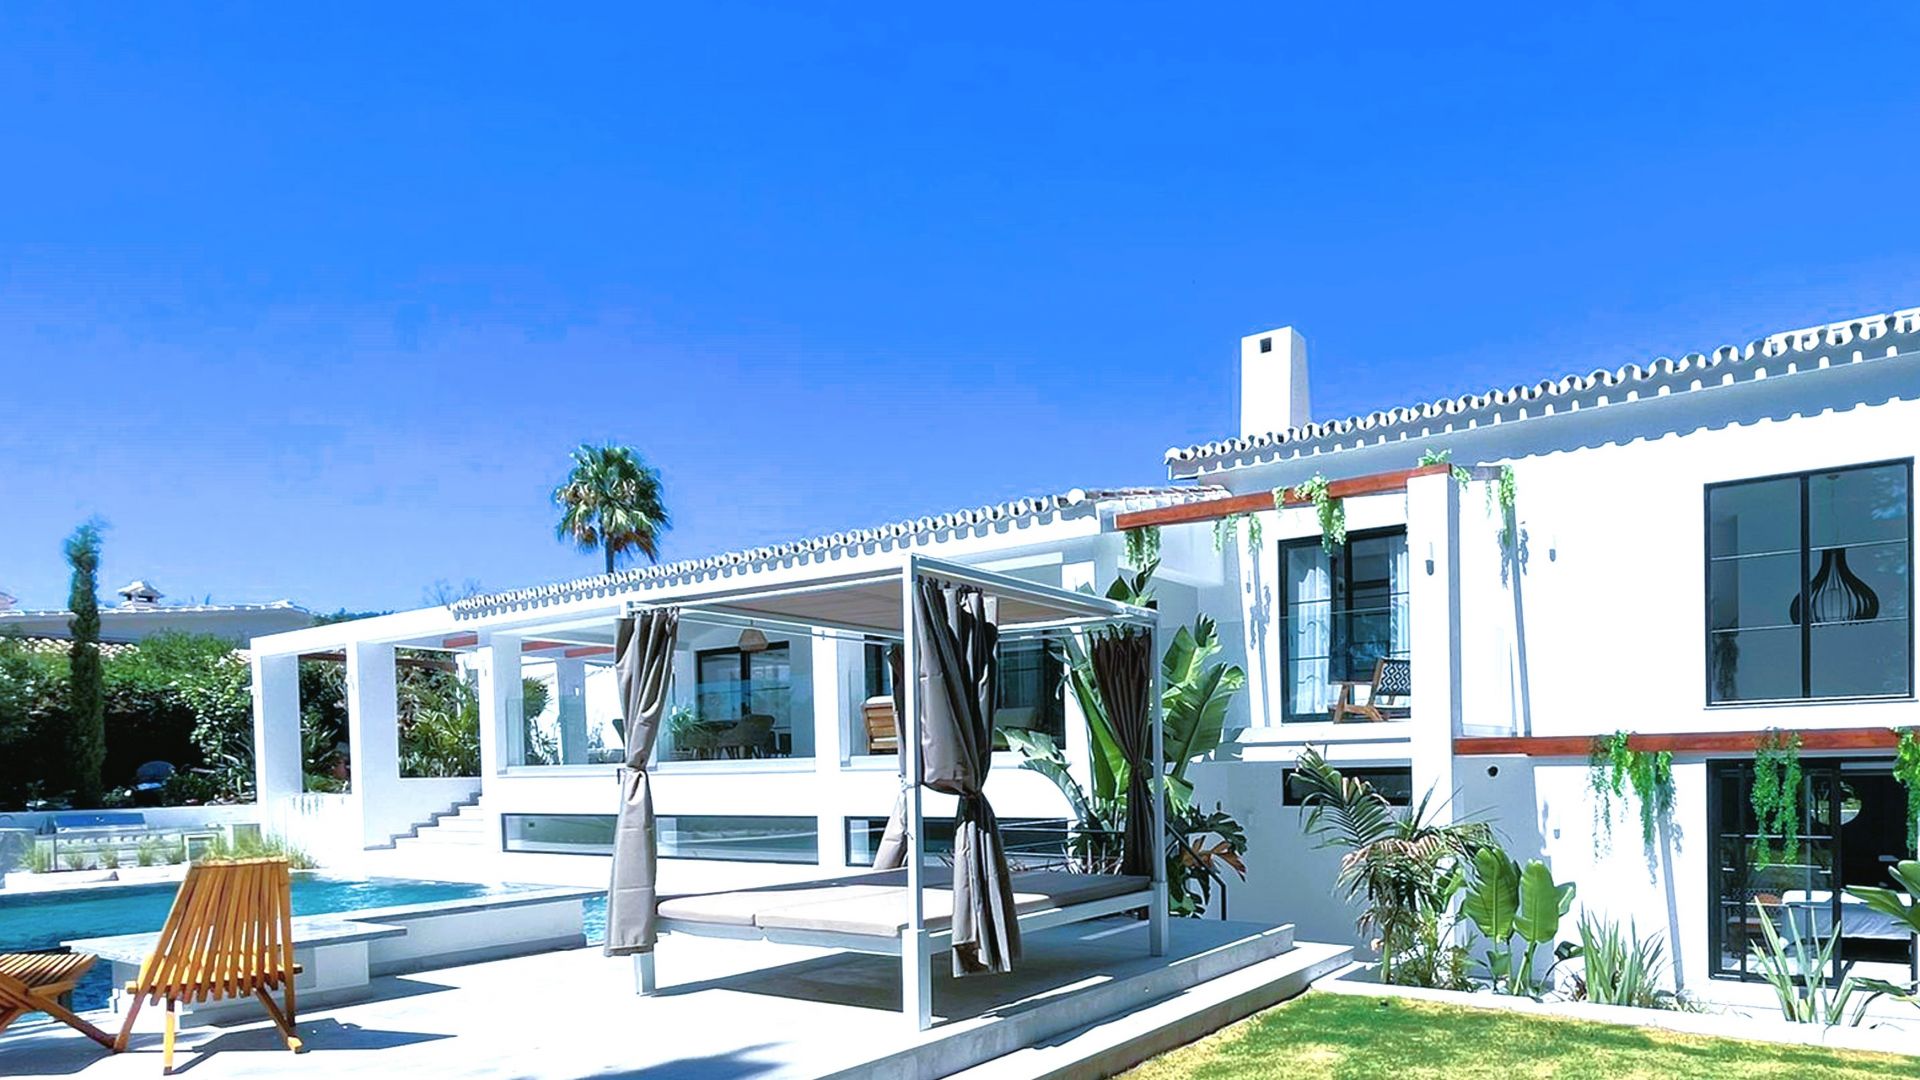 Luxury designer villa with infinity pool in El Rosario | Engel & Völkers Marbella